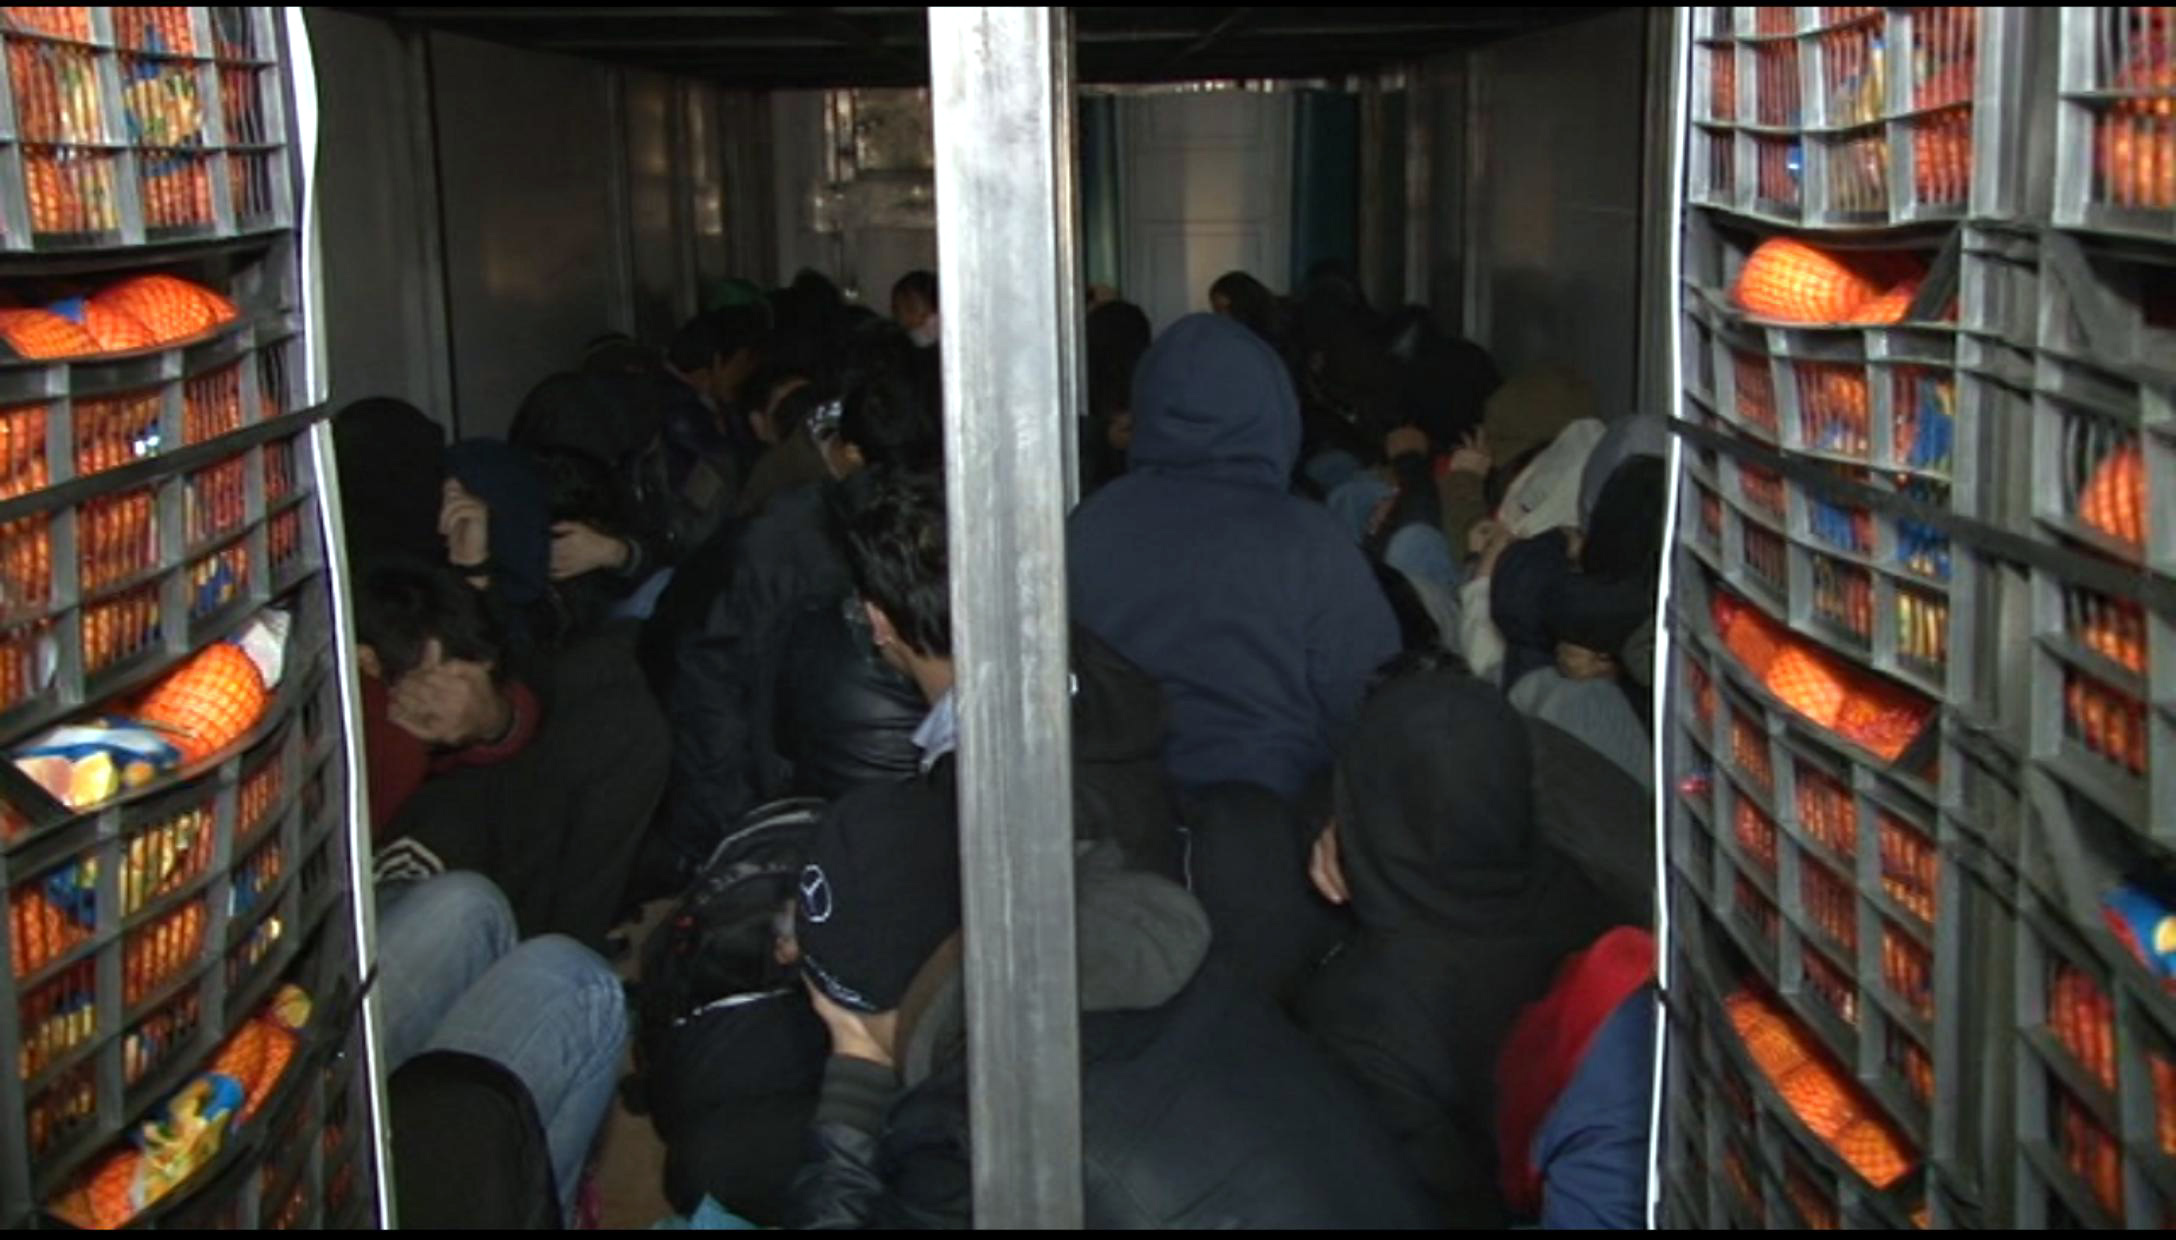 “Ταρίφα” 4.000 ευρώ για να μεταφέρουν παράνομους μετανάστες στην Ιταλία